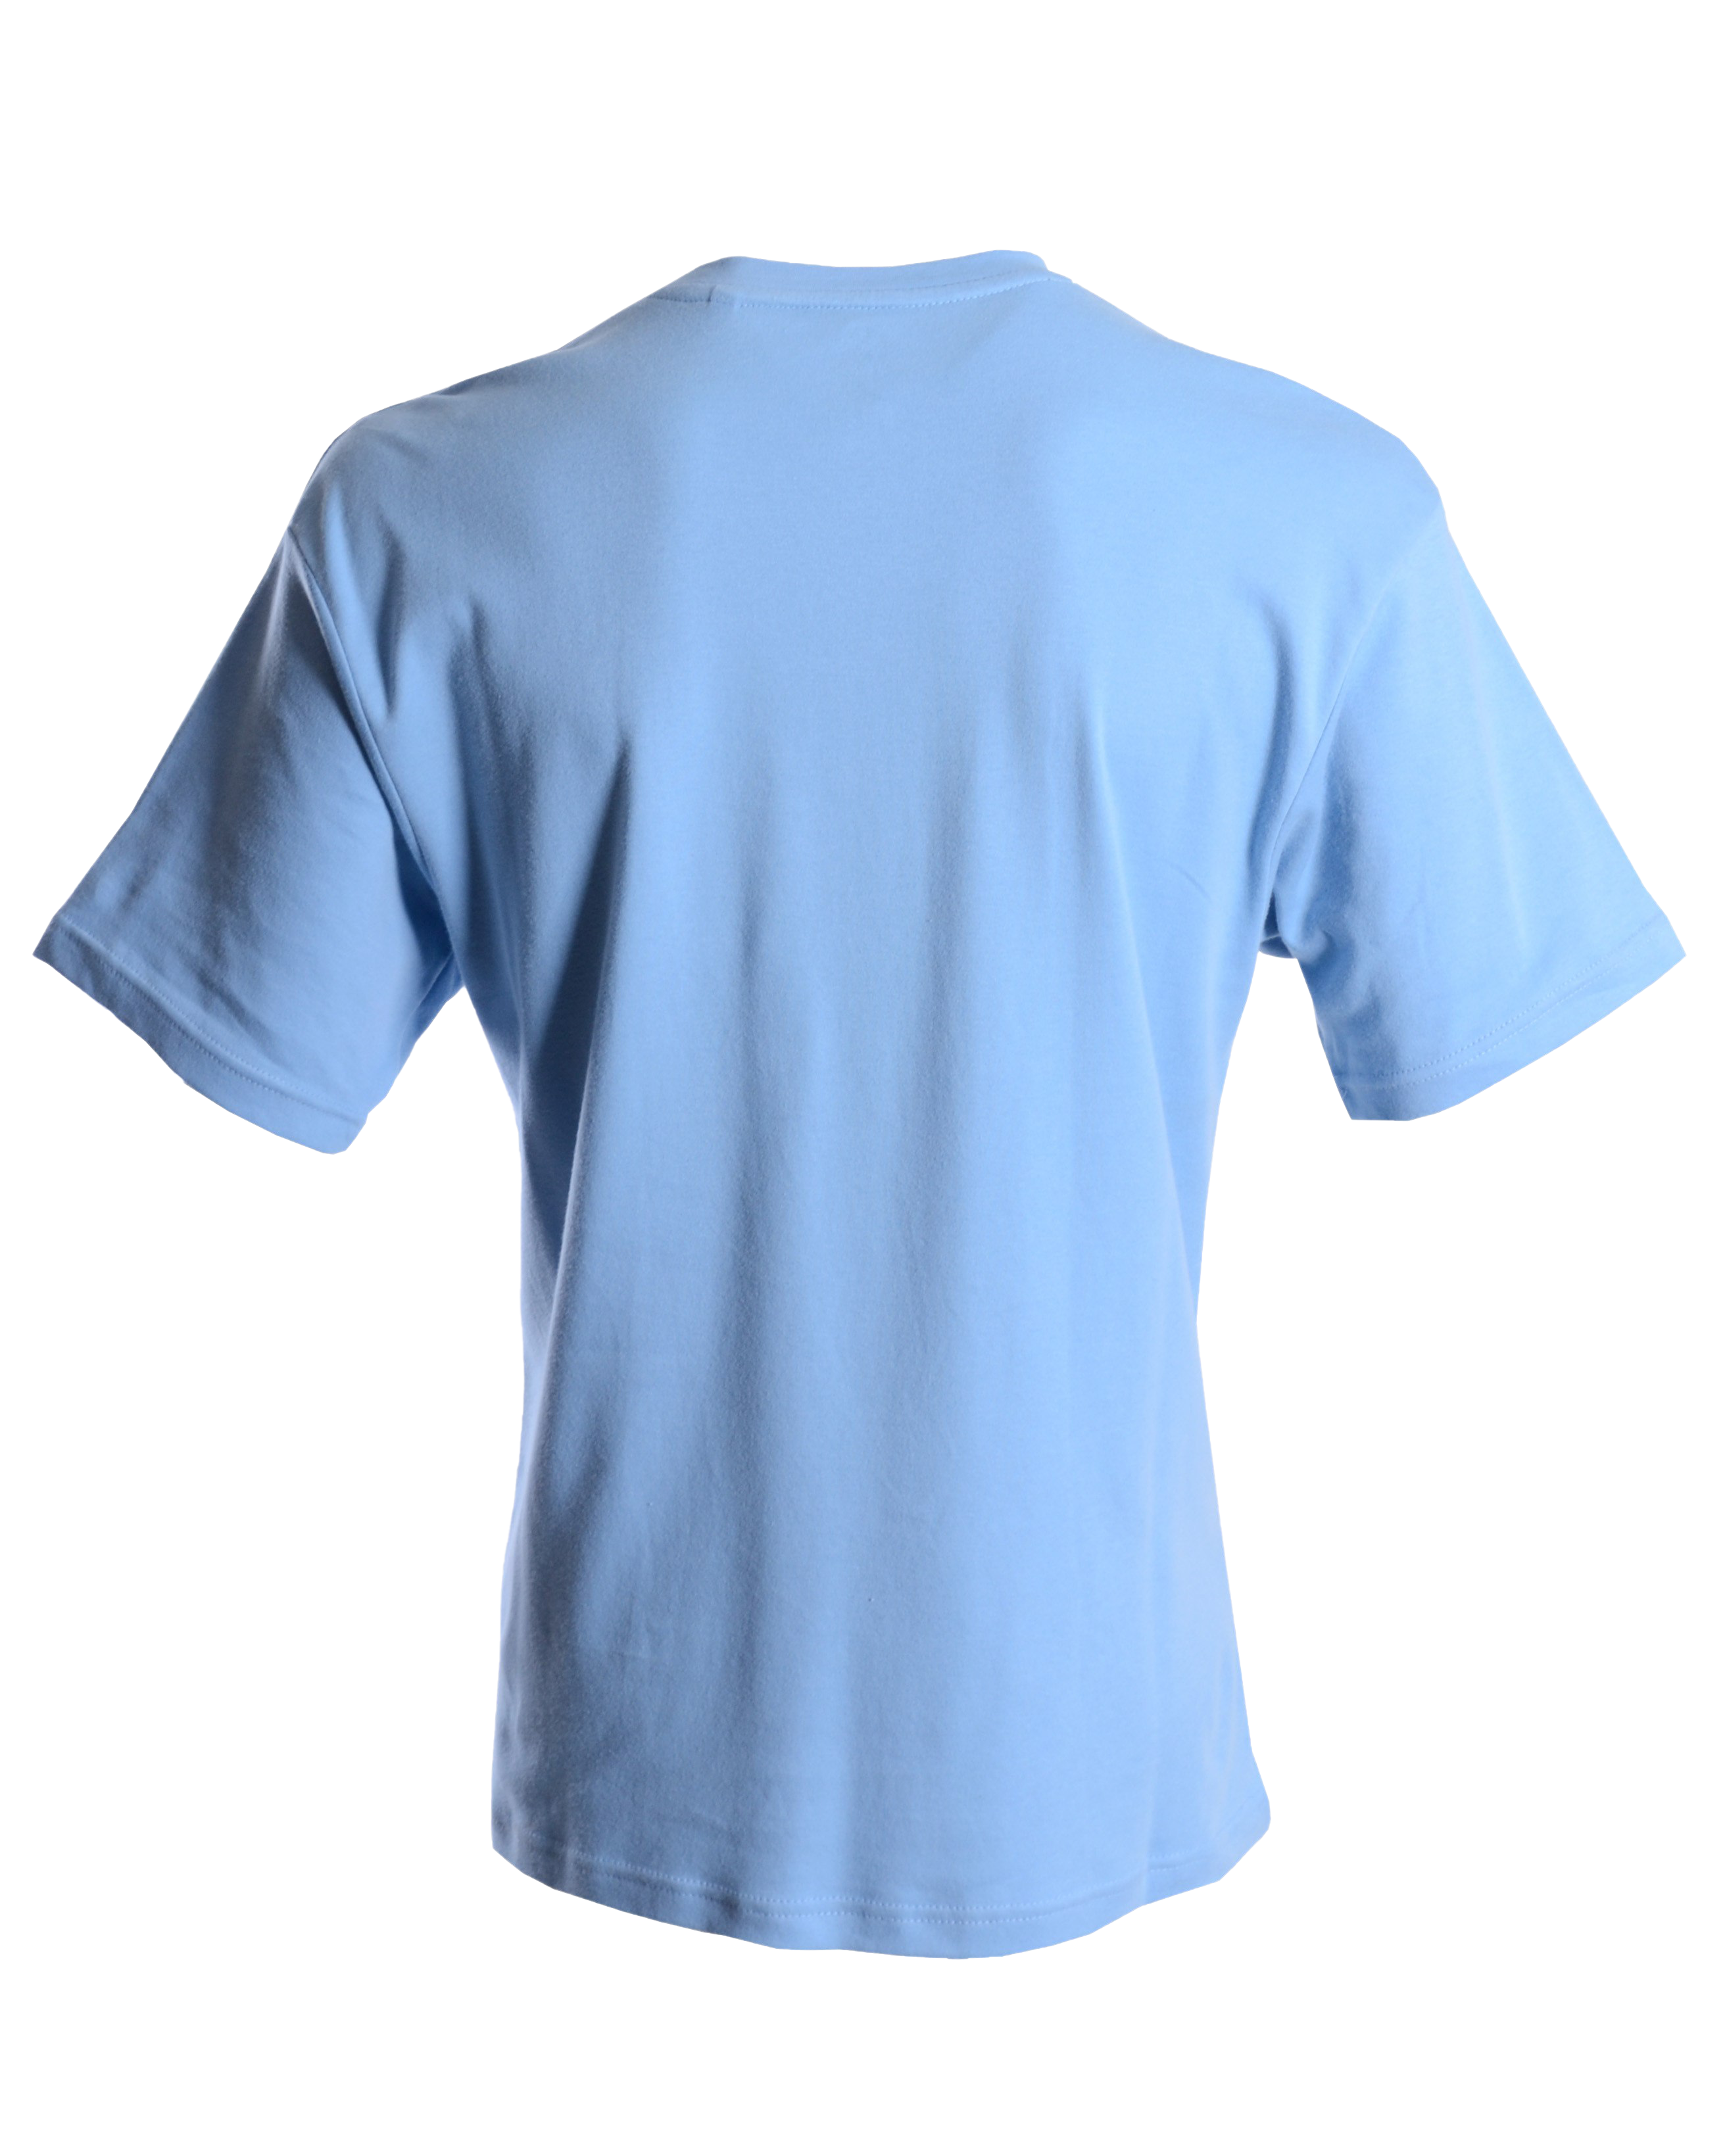 Простая синяя футболка PNG высококачественный образ